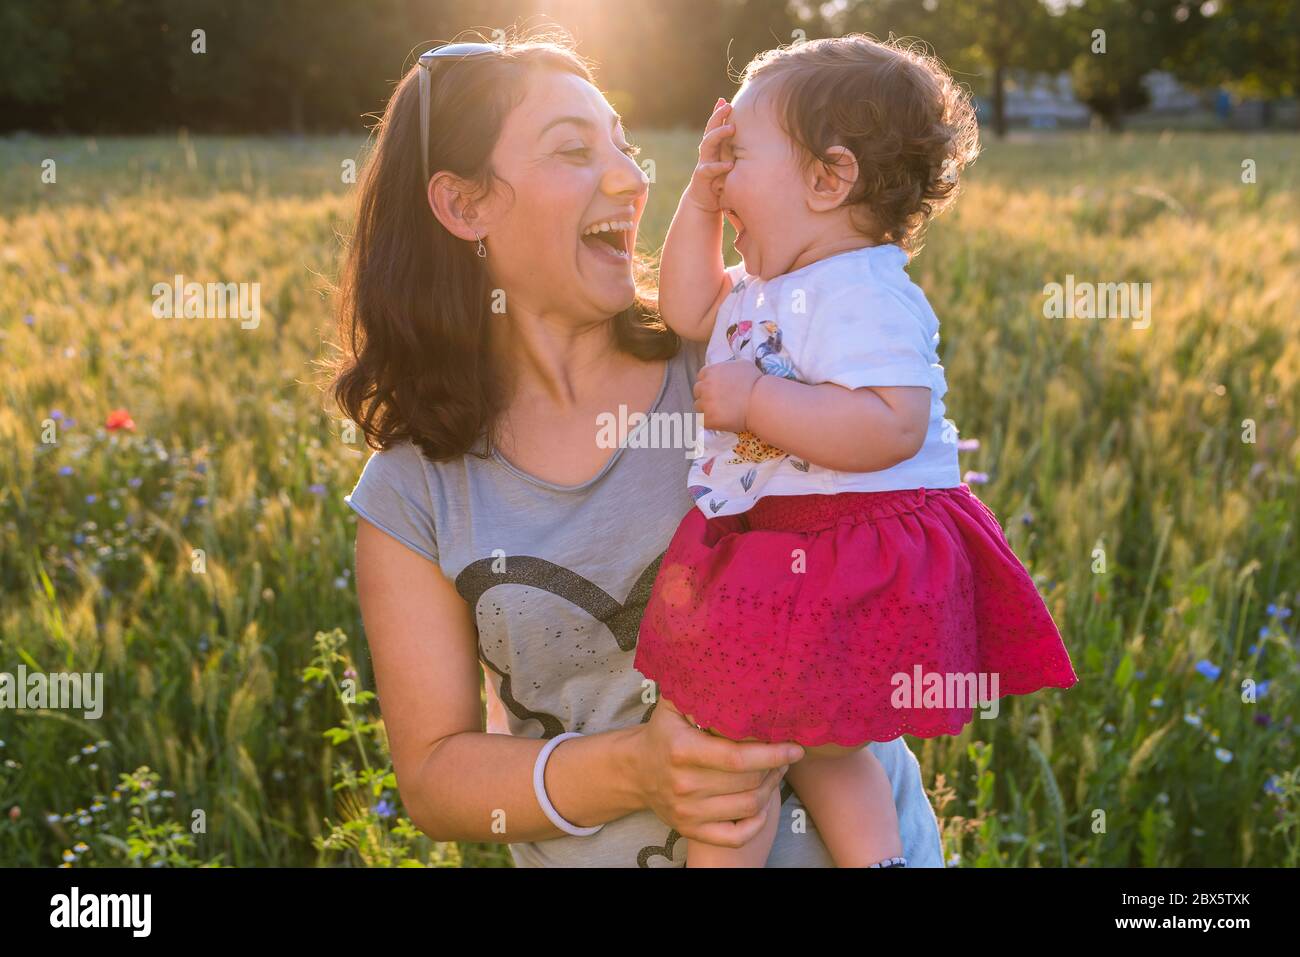 Eine junge Mutter hält ihr Baby in den Armen, während sie an einem sonnigen Tag draußen zusammen lachen. Stockfoto